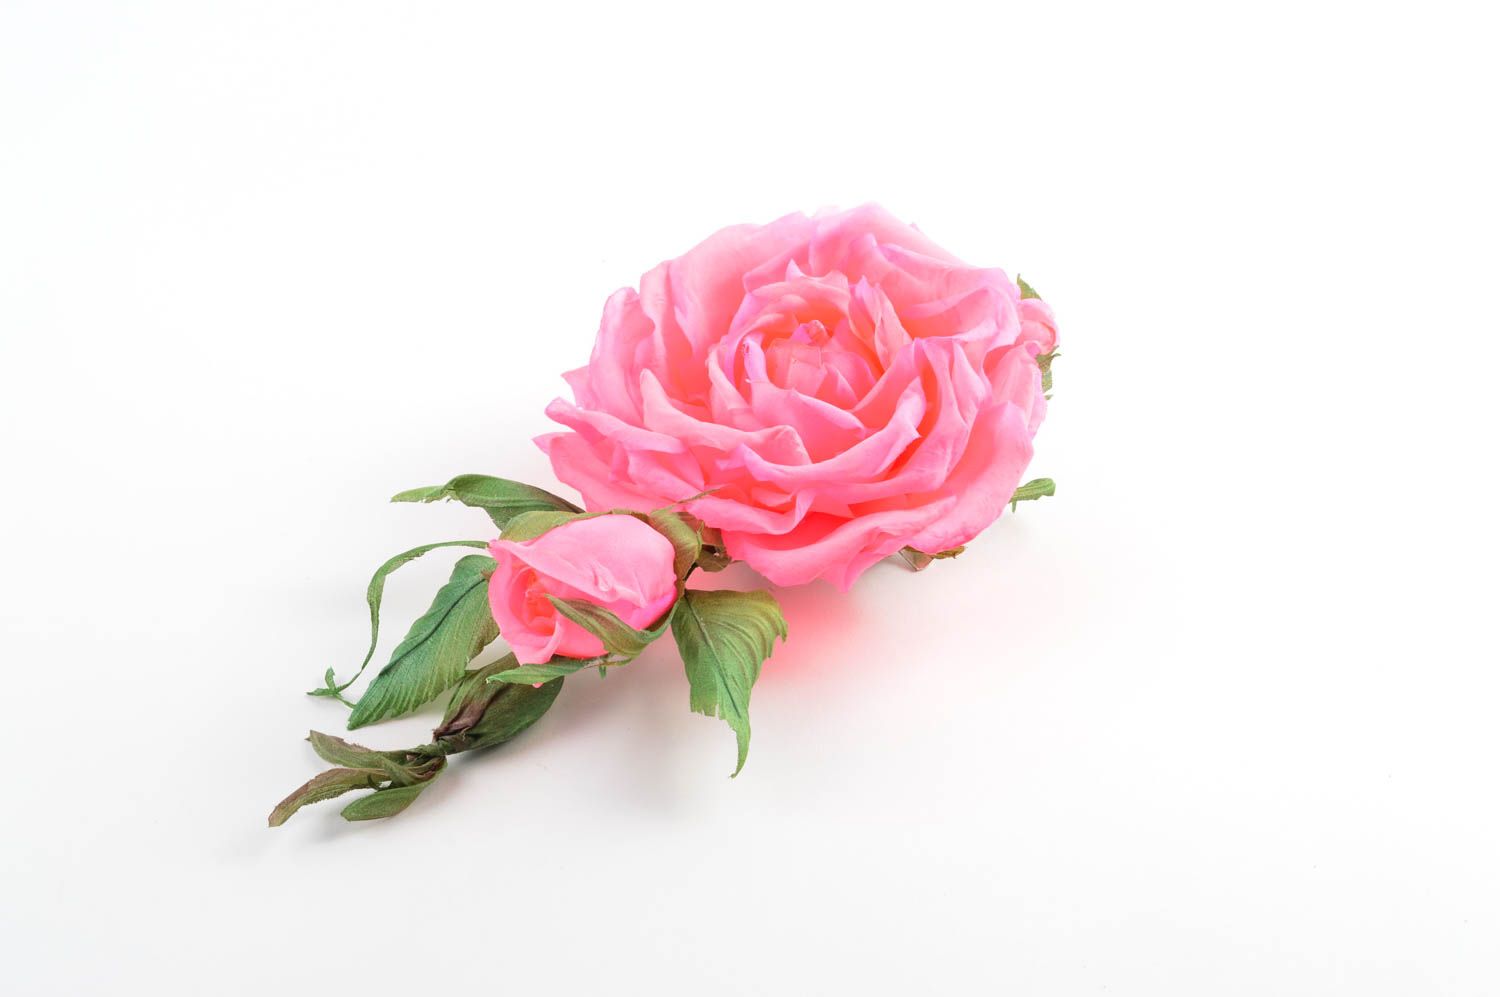 Брошь из шелка хэнд мэйд брошь-заколка розовая роза авторская бижутерия фото 2